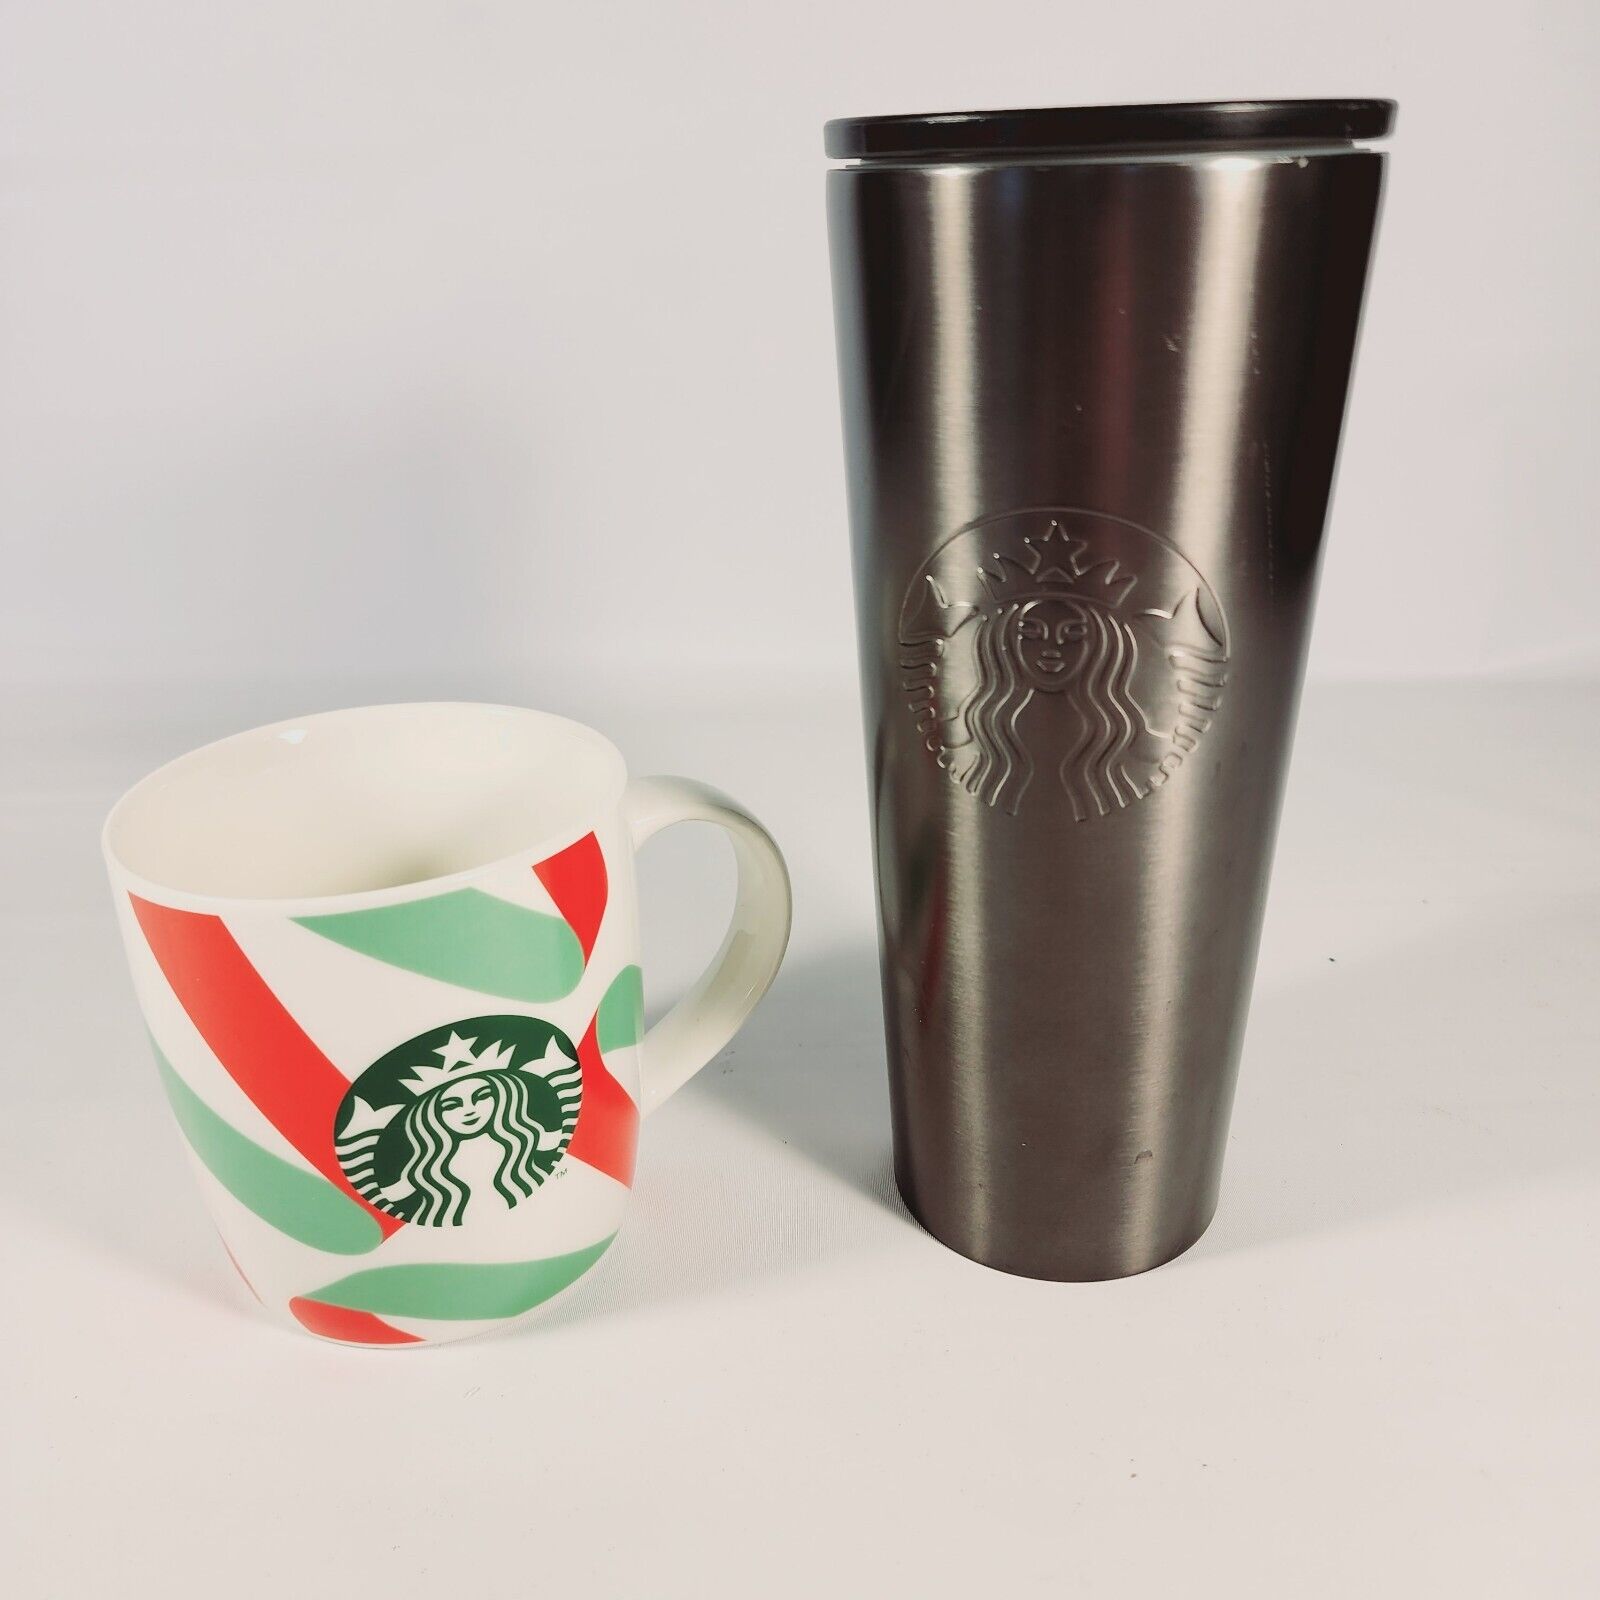 Starbucks Matte Black/ Grey Metal Stainless Steel Tumbler Cup + Holiday Mug 